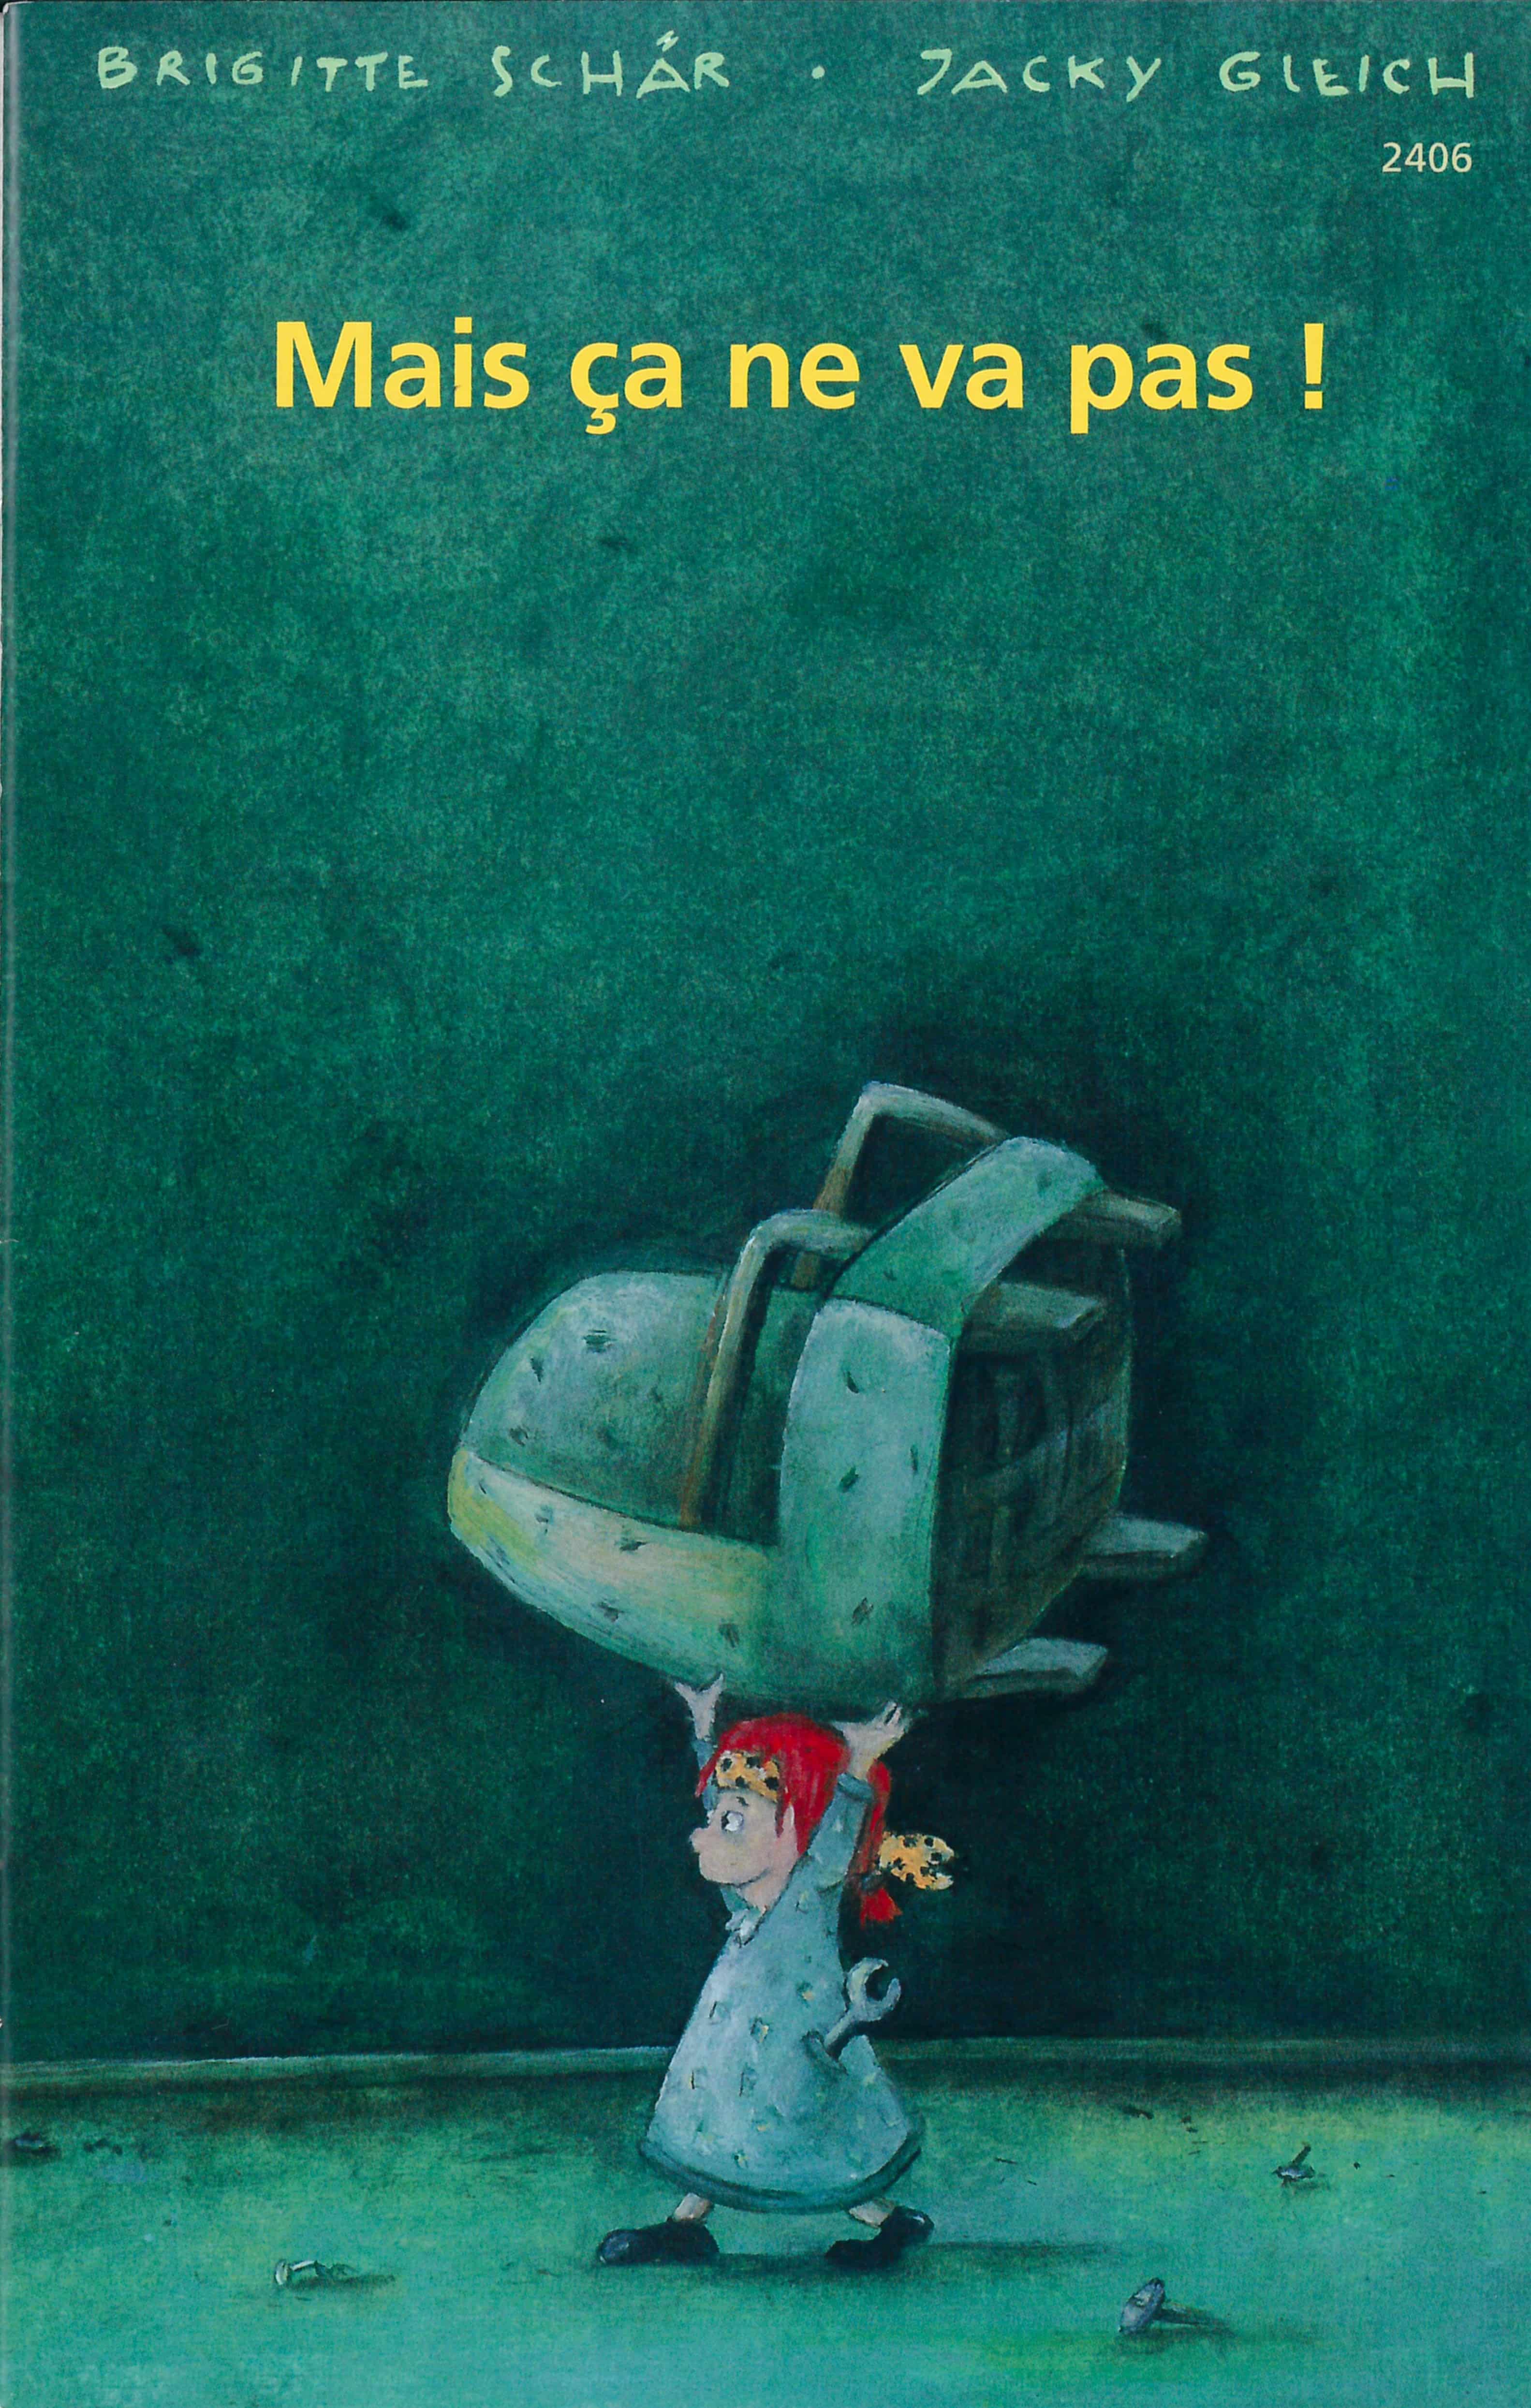 Mais ça ne va pas!, un livre pour enfants de Brigitte Schaer, illustré par Jacky Gleich, éditions de l'OSL, noël, fantastique